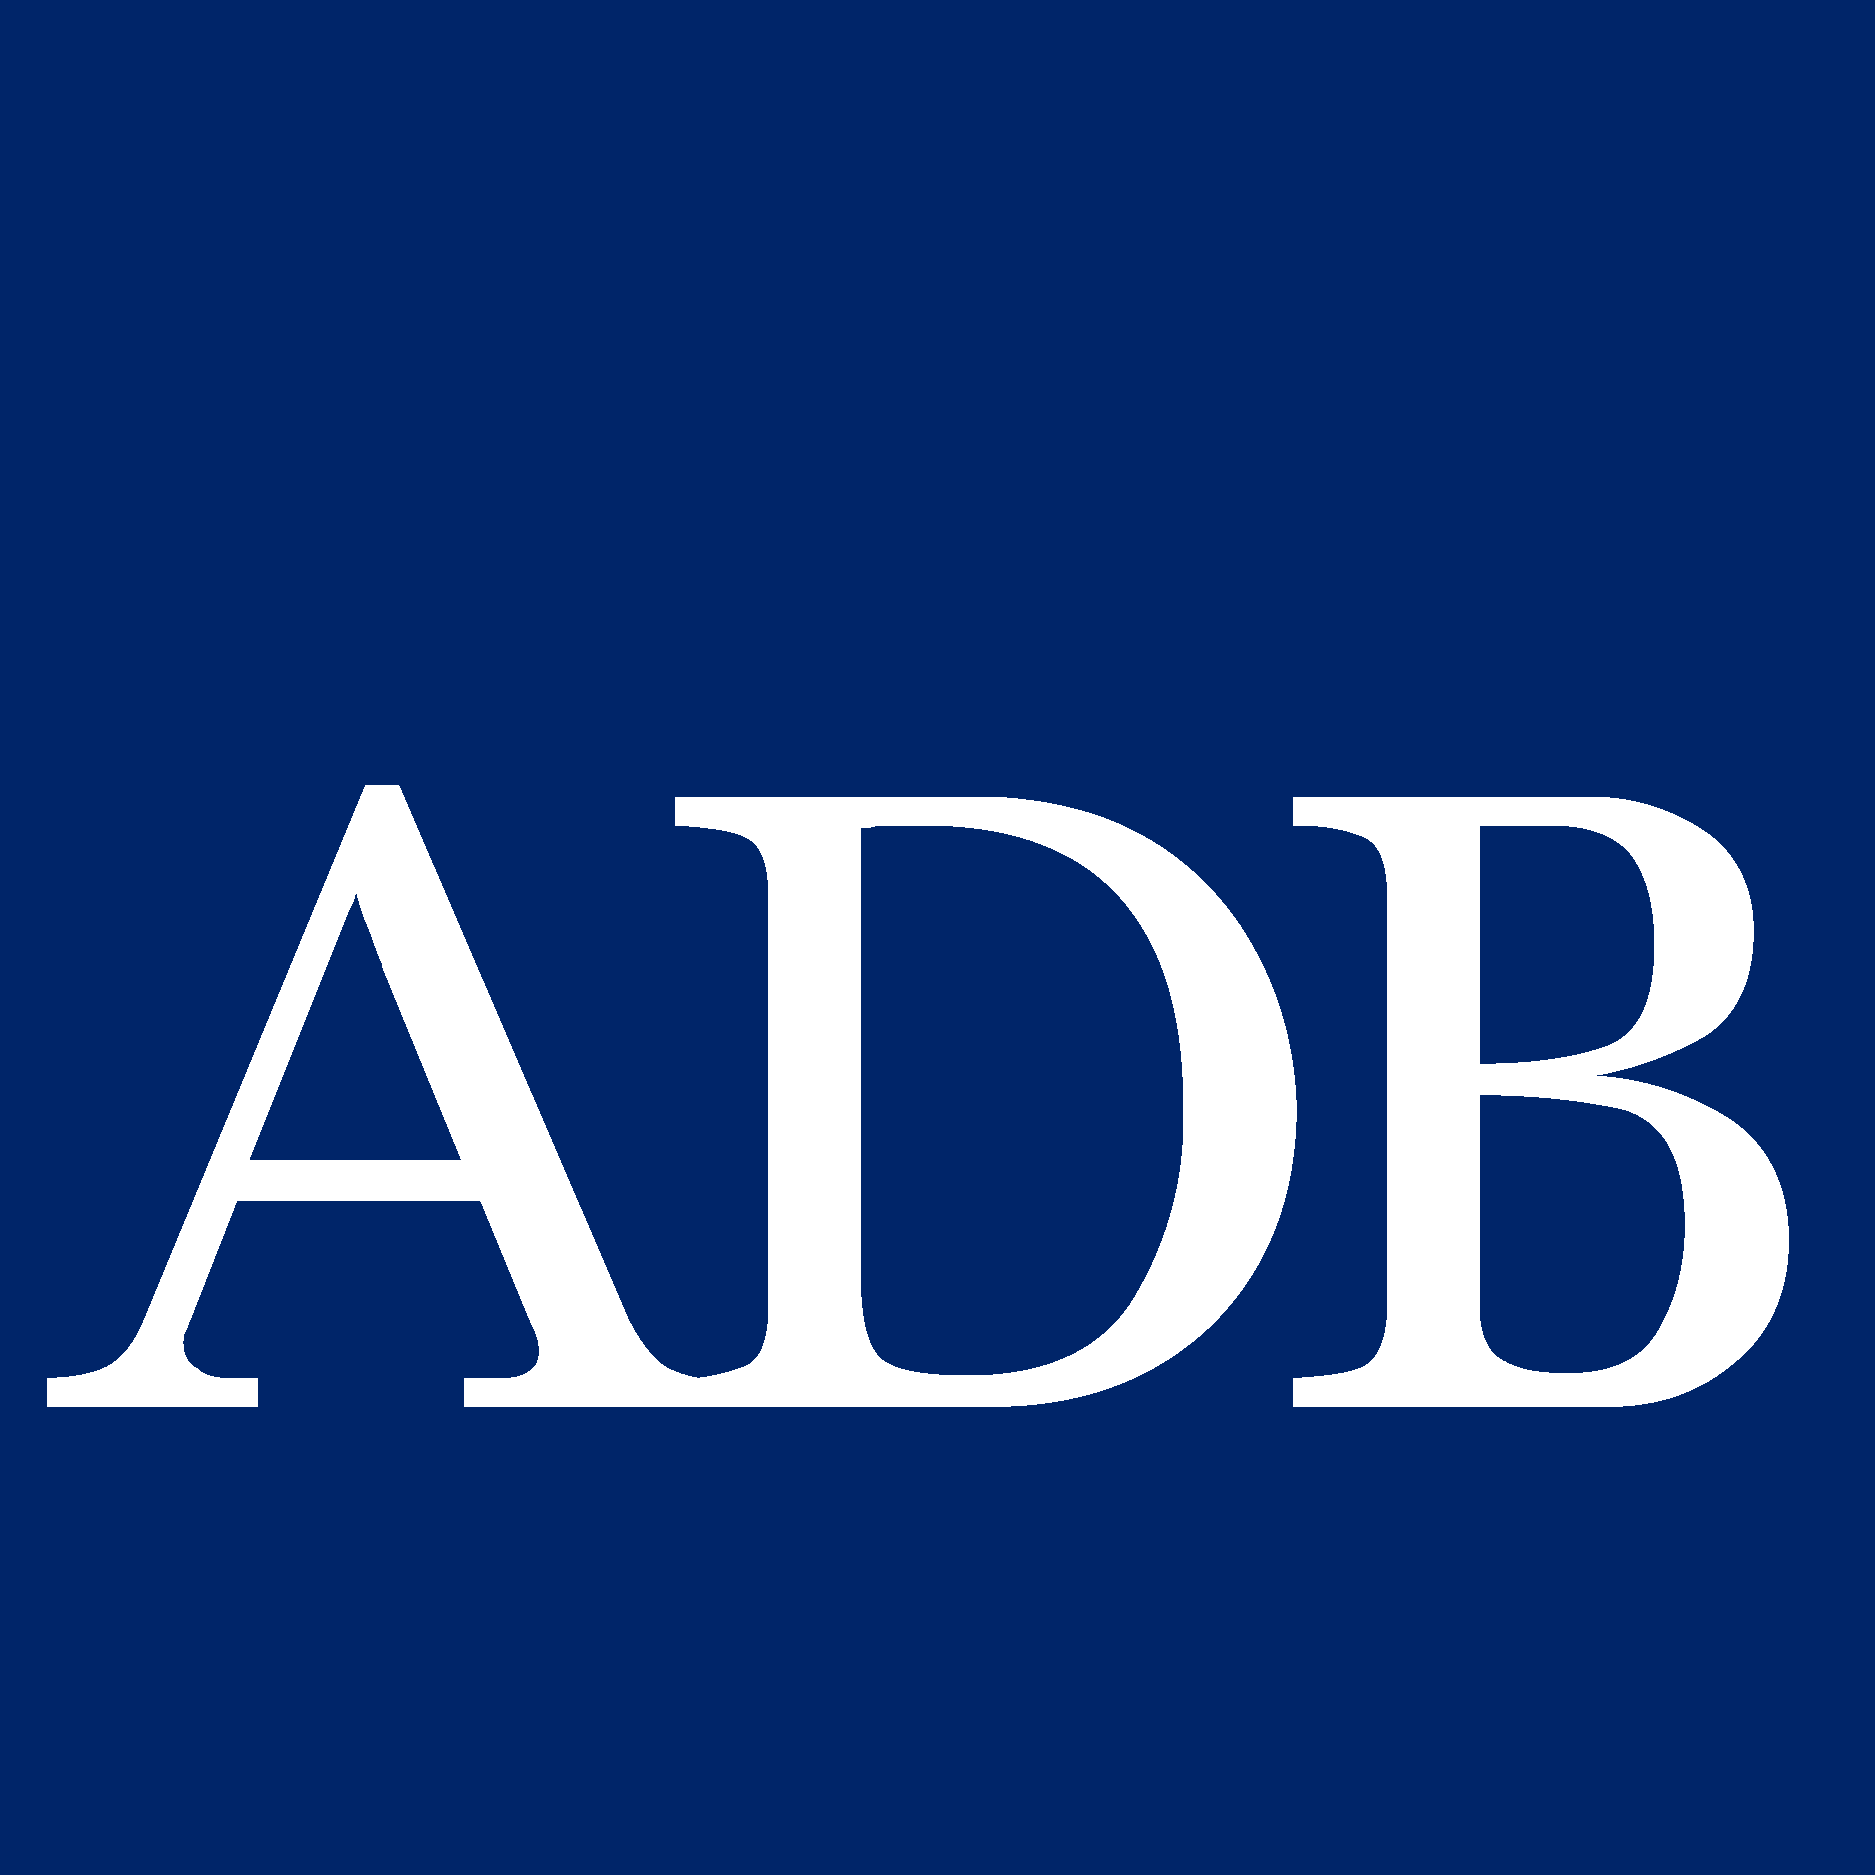 Asian Development Bank Icon Logo Vector